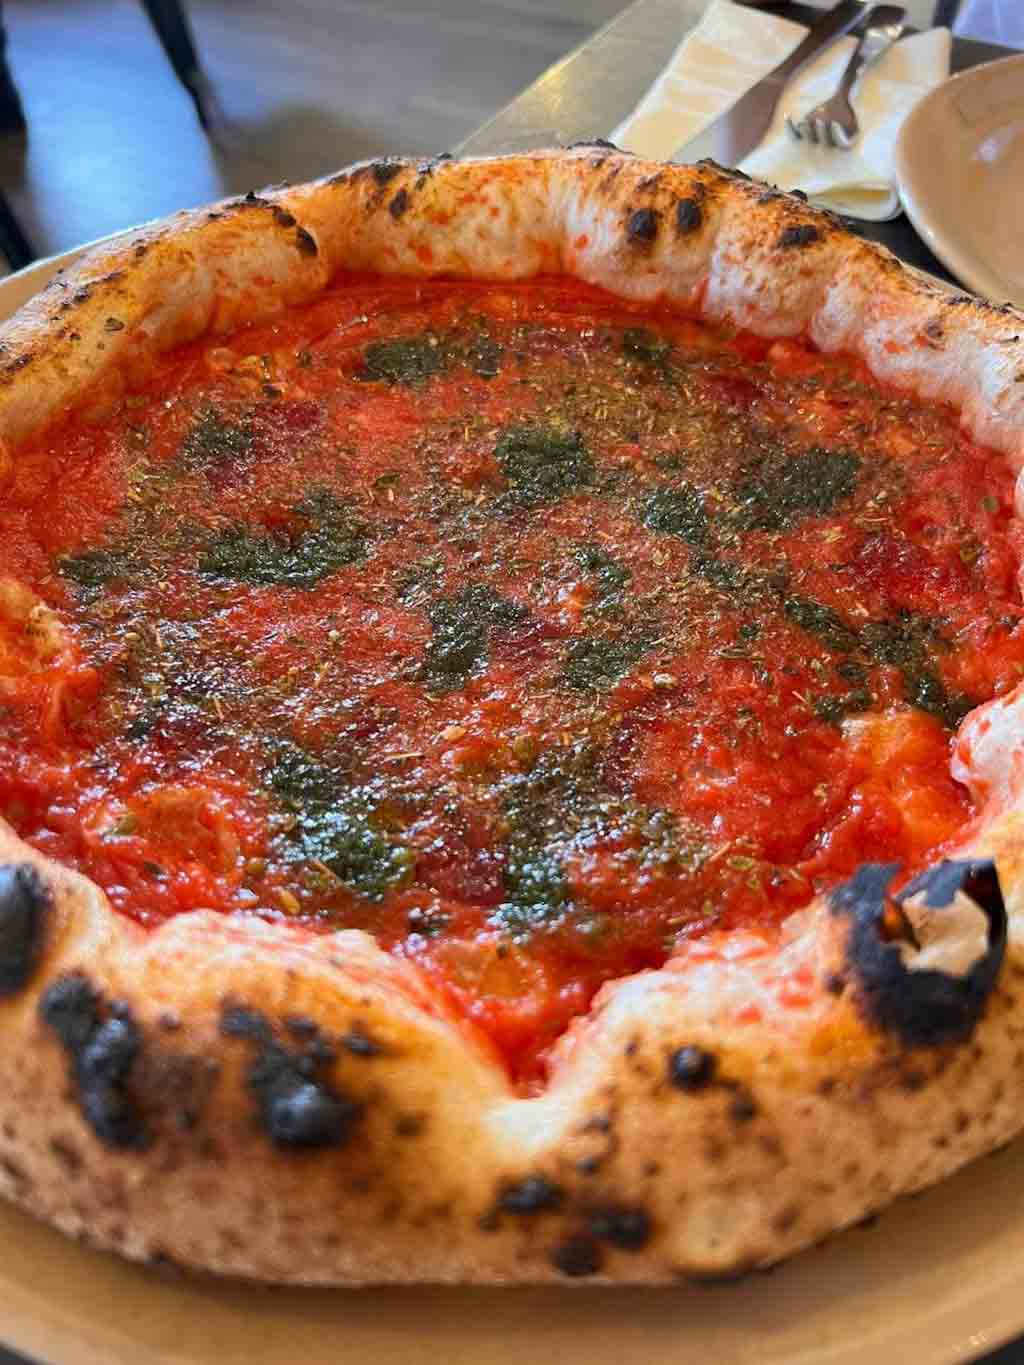 Pizzeria Diego Vitagliano a Napoli Santa Lucia pizza marinara sbagliata